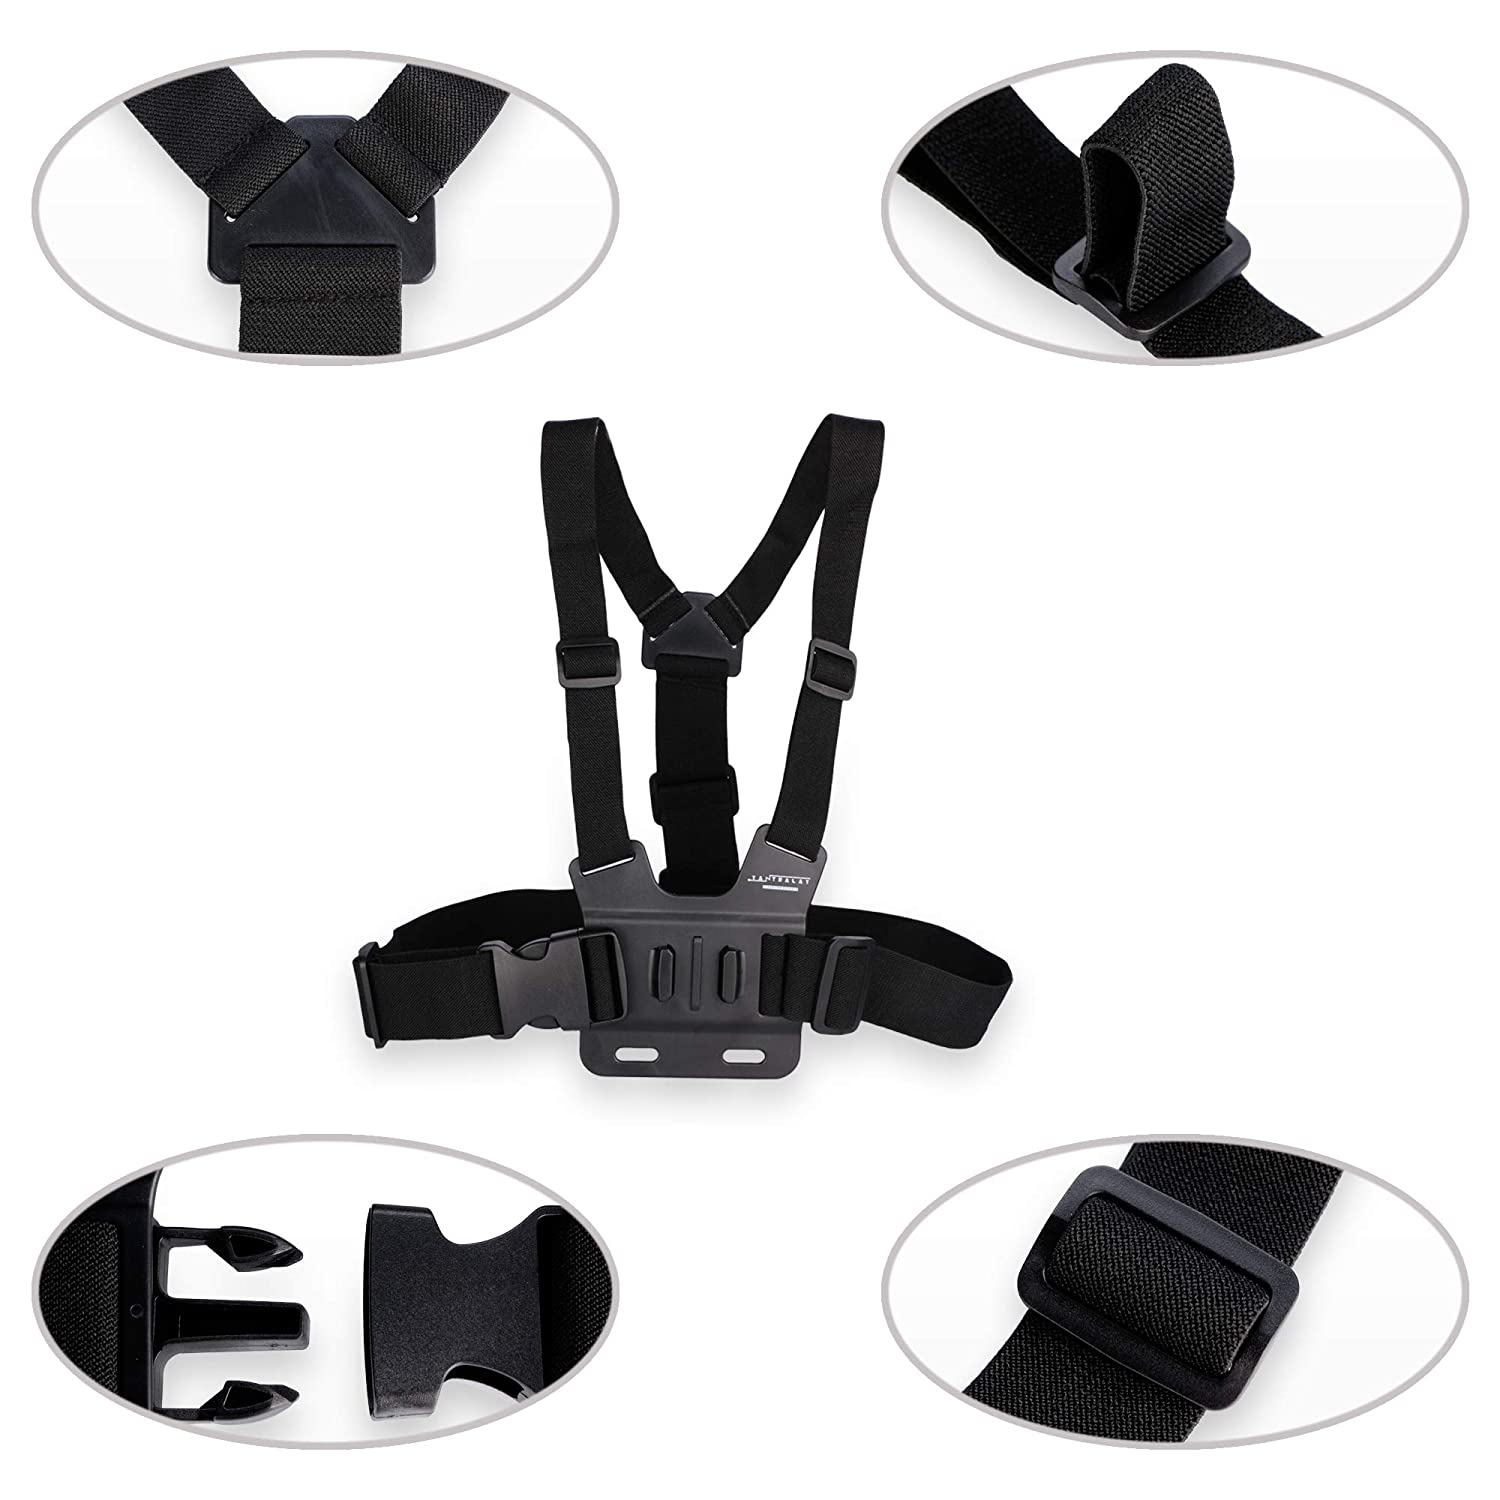 YEHOLDING Kit d'accessoires pour GoPro, ceinture de harnais